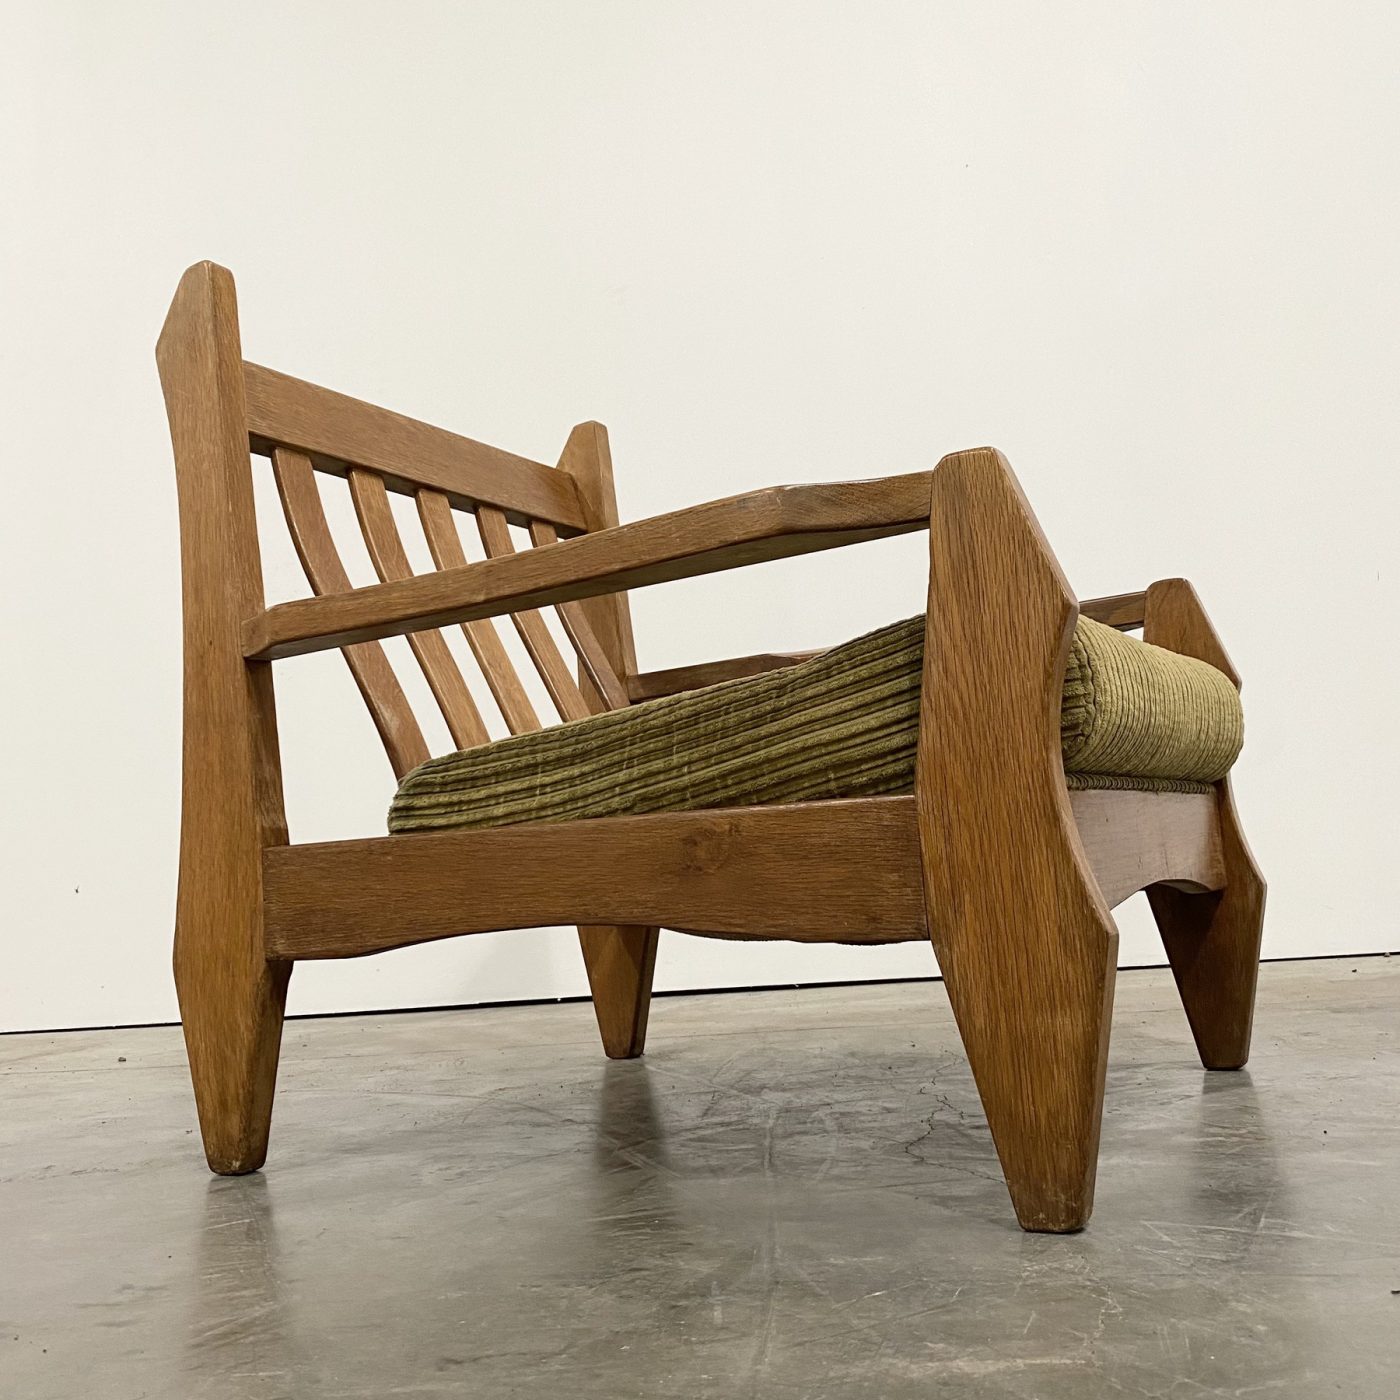 objet-vagabond-oak-armchairs0006